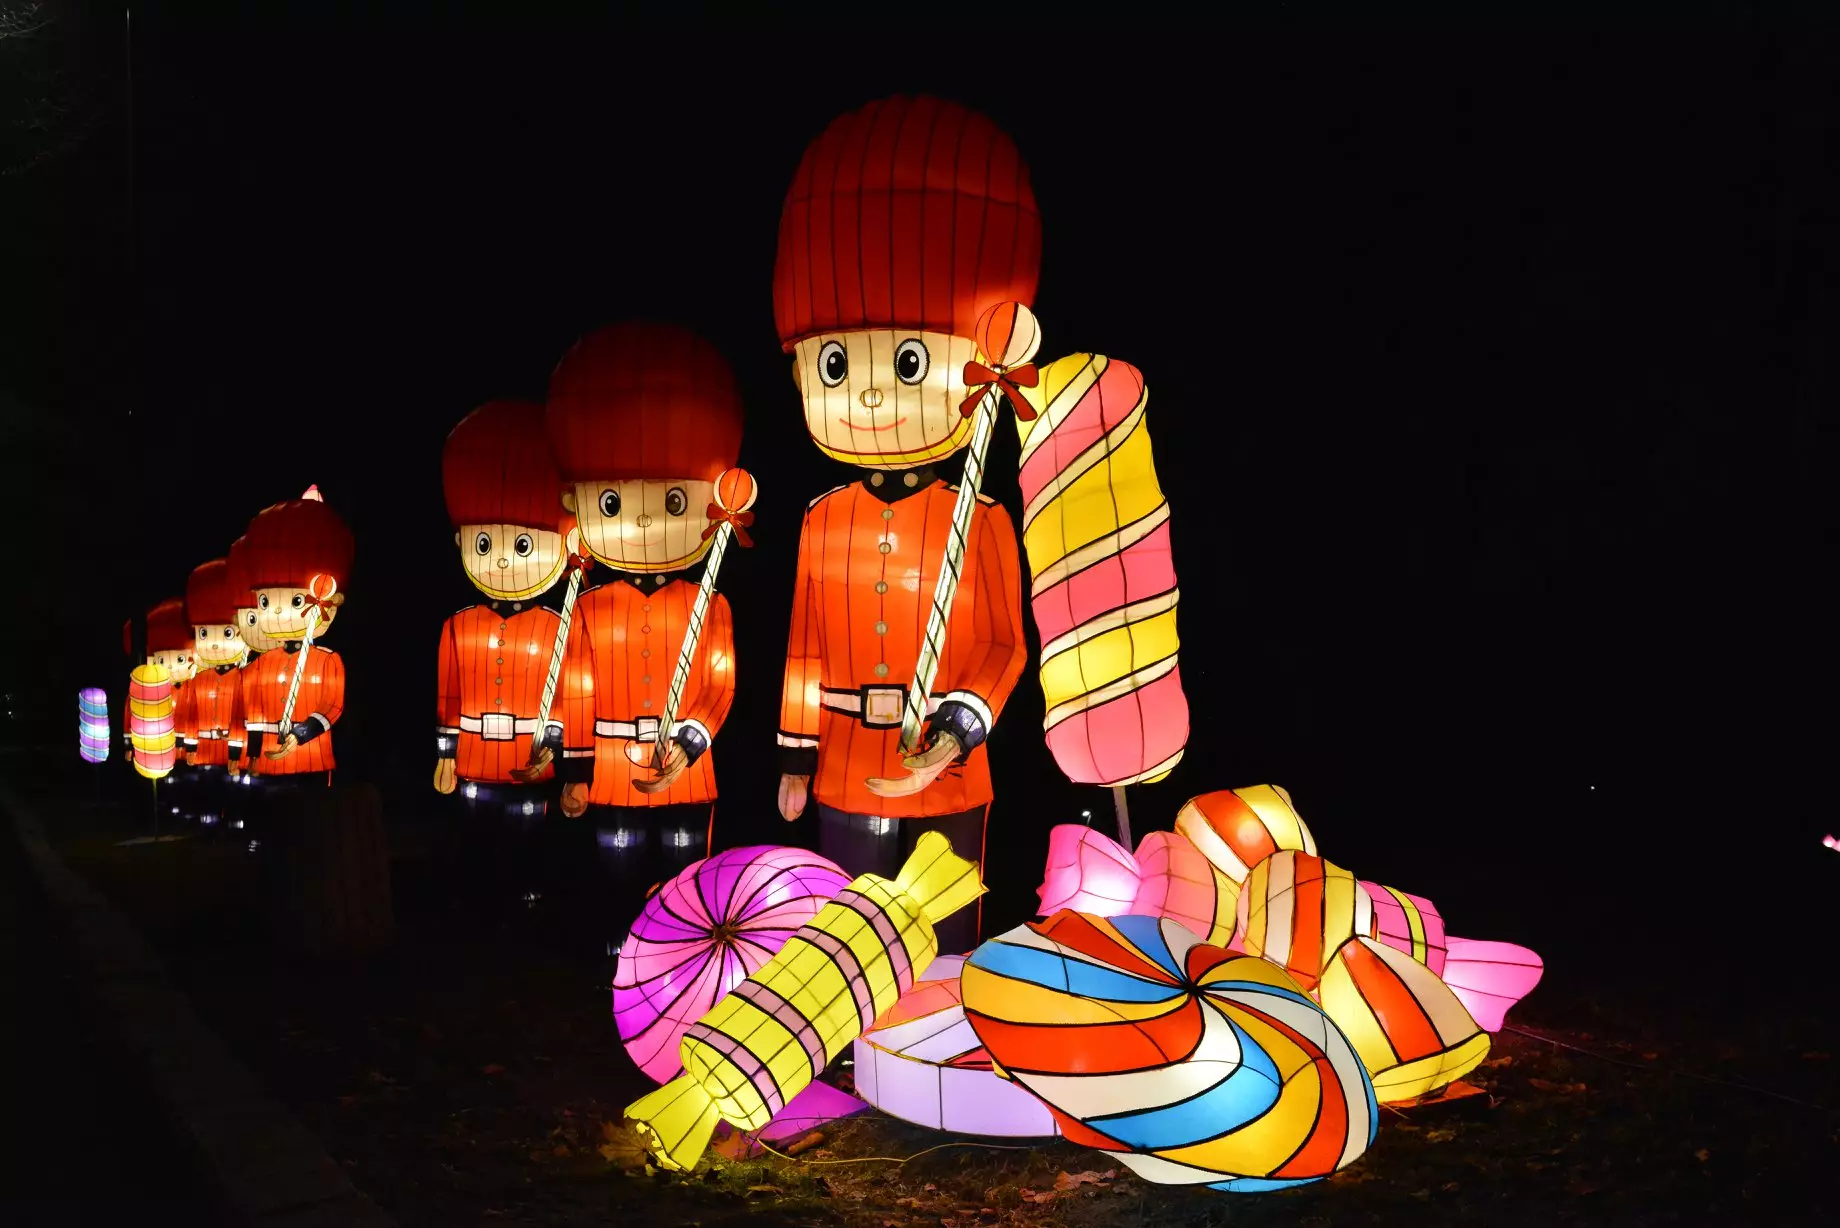 Новорічний фестиваль гігантських китайських ліхтарів